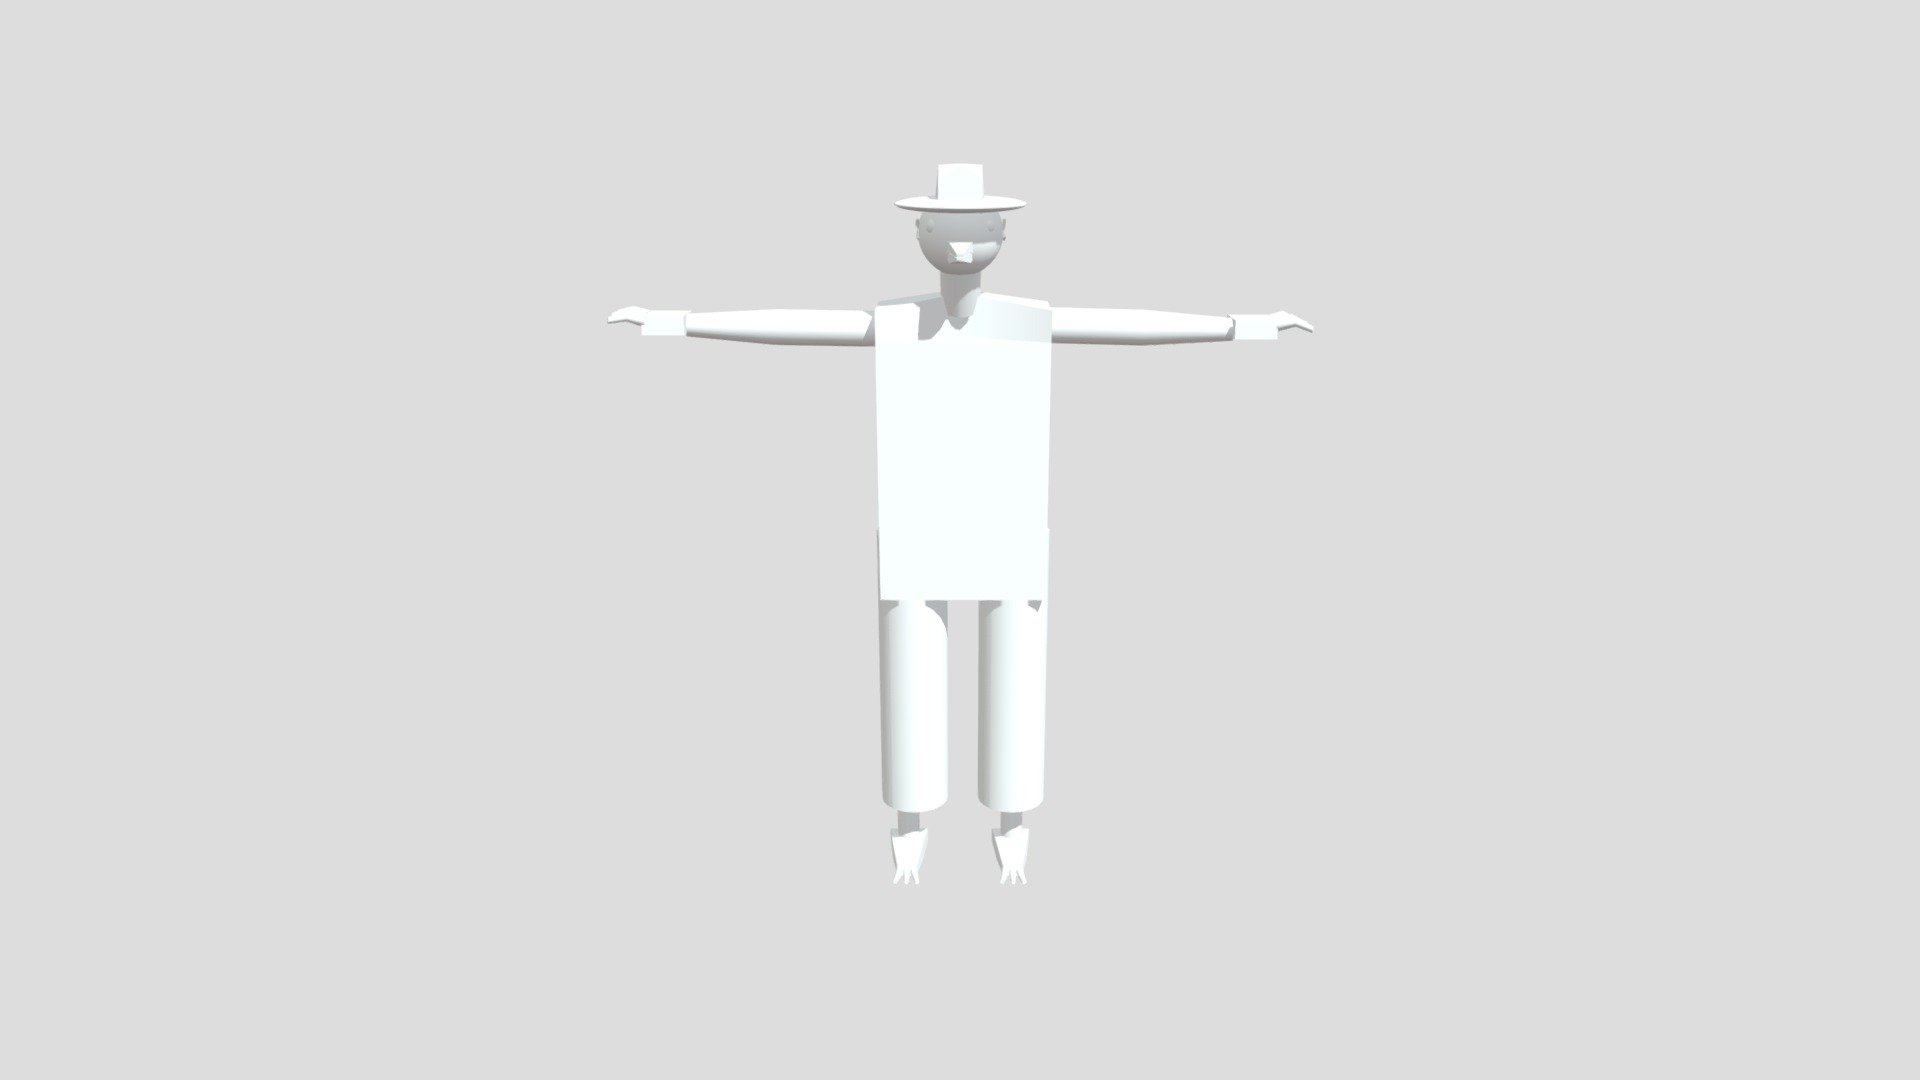 Palemon_LowPoly - 3D model by DannyG (@DannyG02) [035e518] - Sketchfab